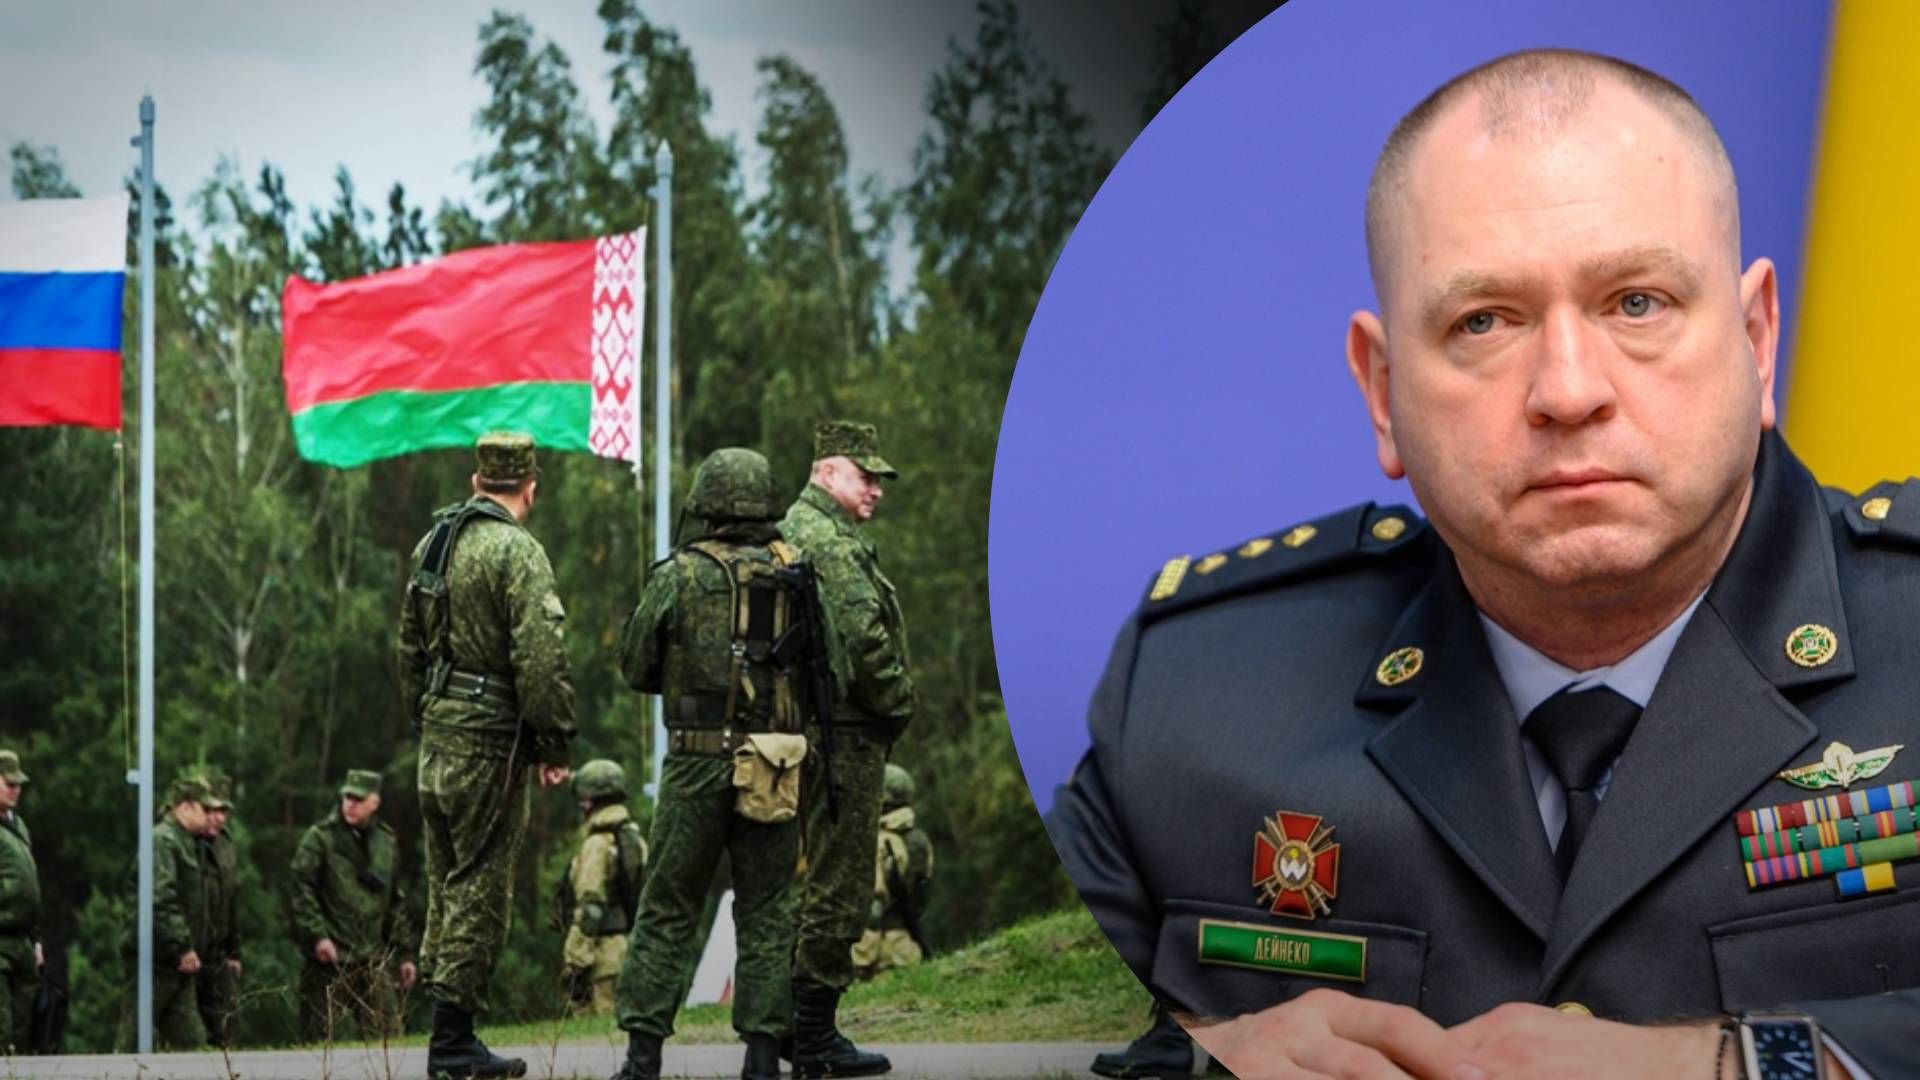 Скільки військових Росія стягнула до Білорусі - прикордонники відповіли